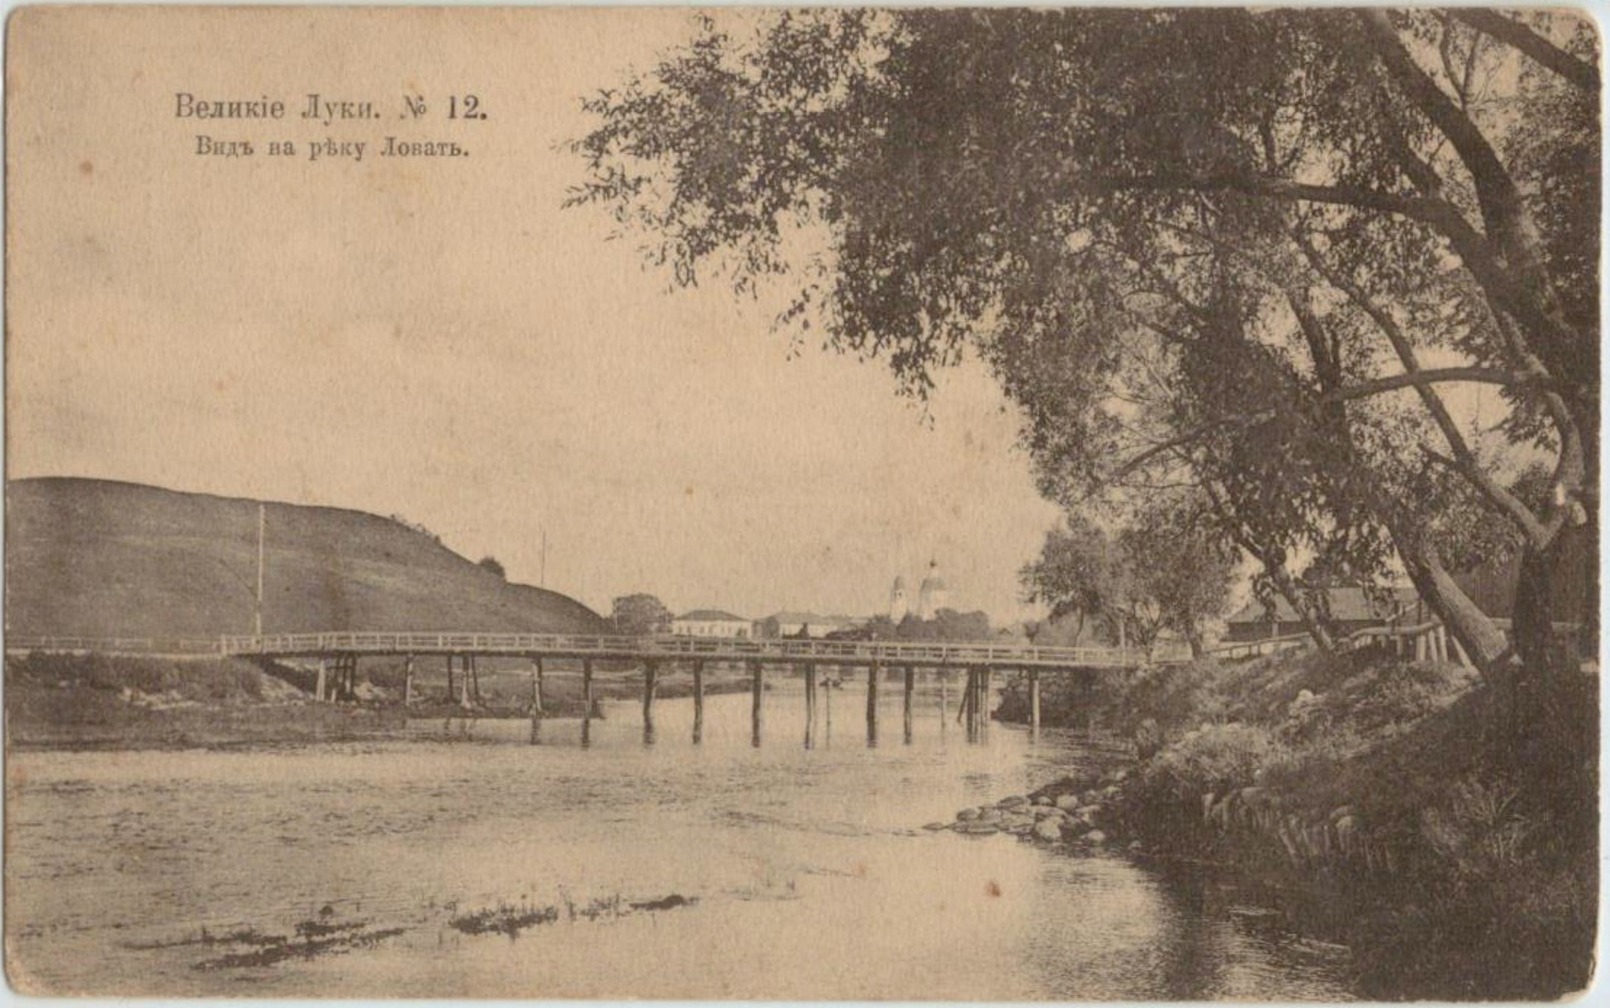 Мосты острова Дятлинка. Начало 20 века.